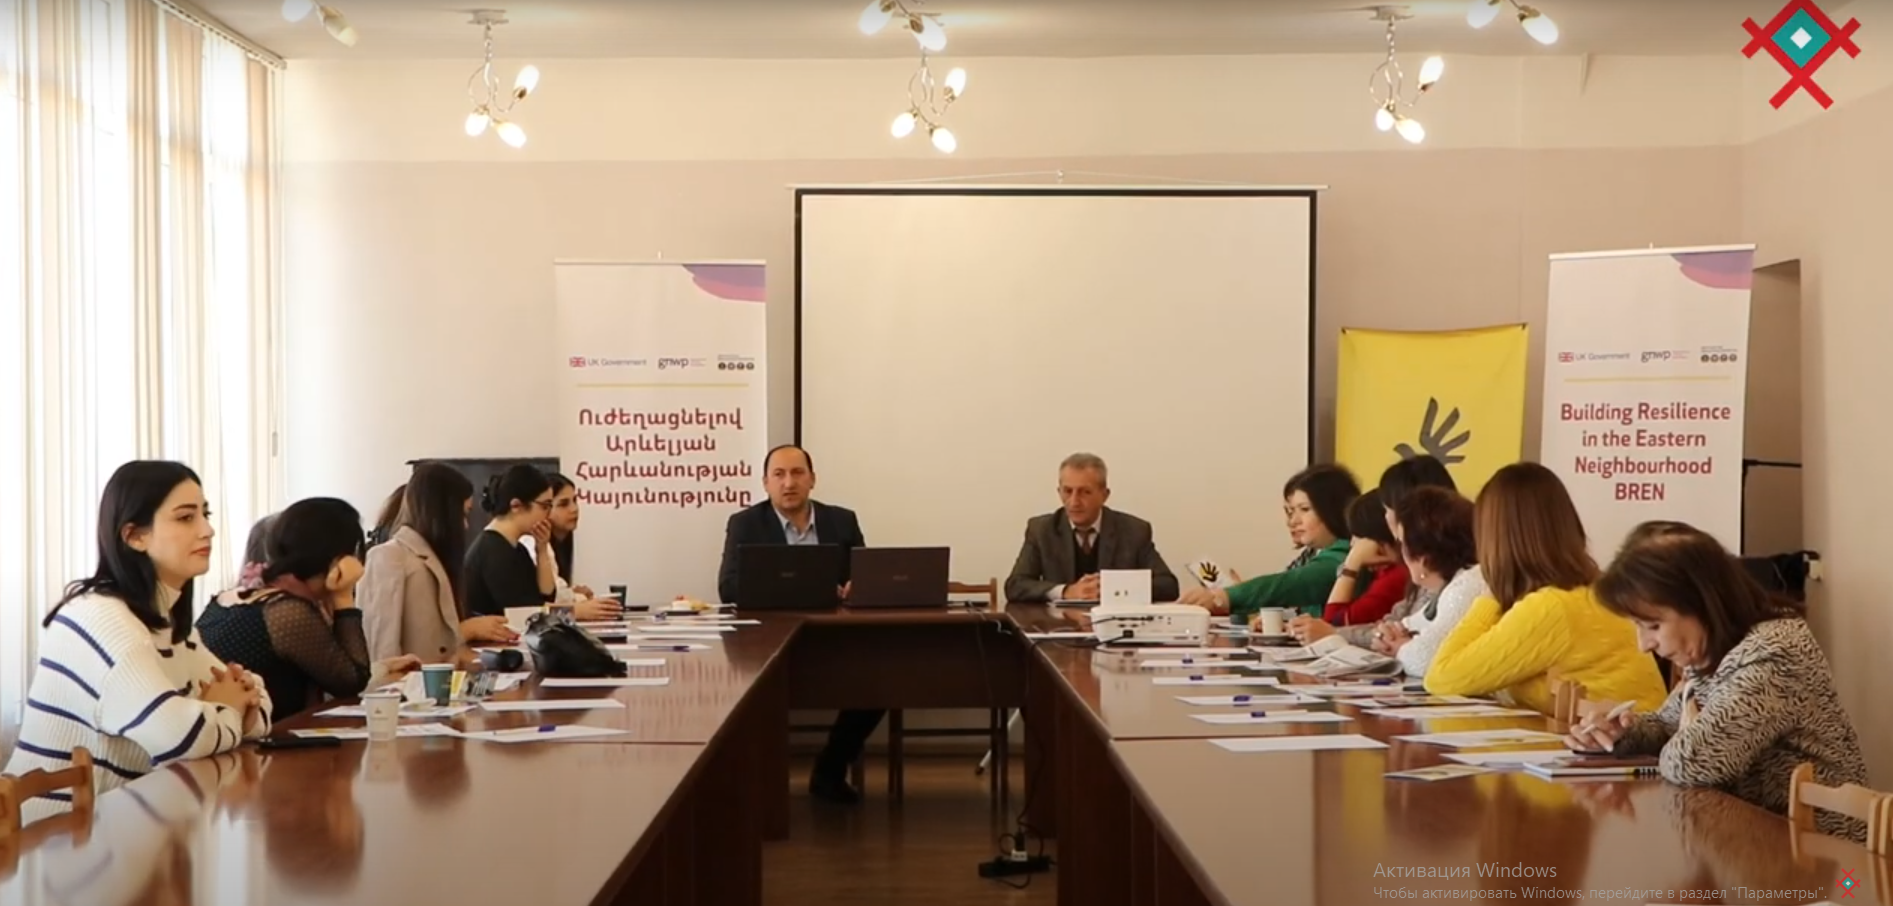 Հայաստանի ազգային փոքրամասնությունների կանանց հզորացումը՝ հանուն կայուն անվտանգության և խաղաղության